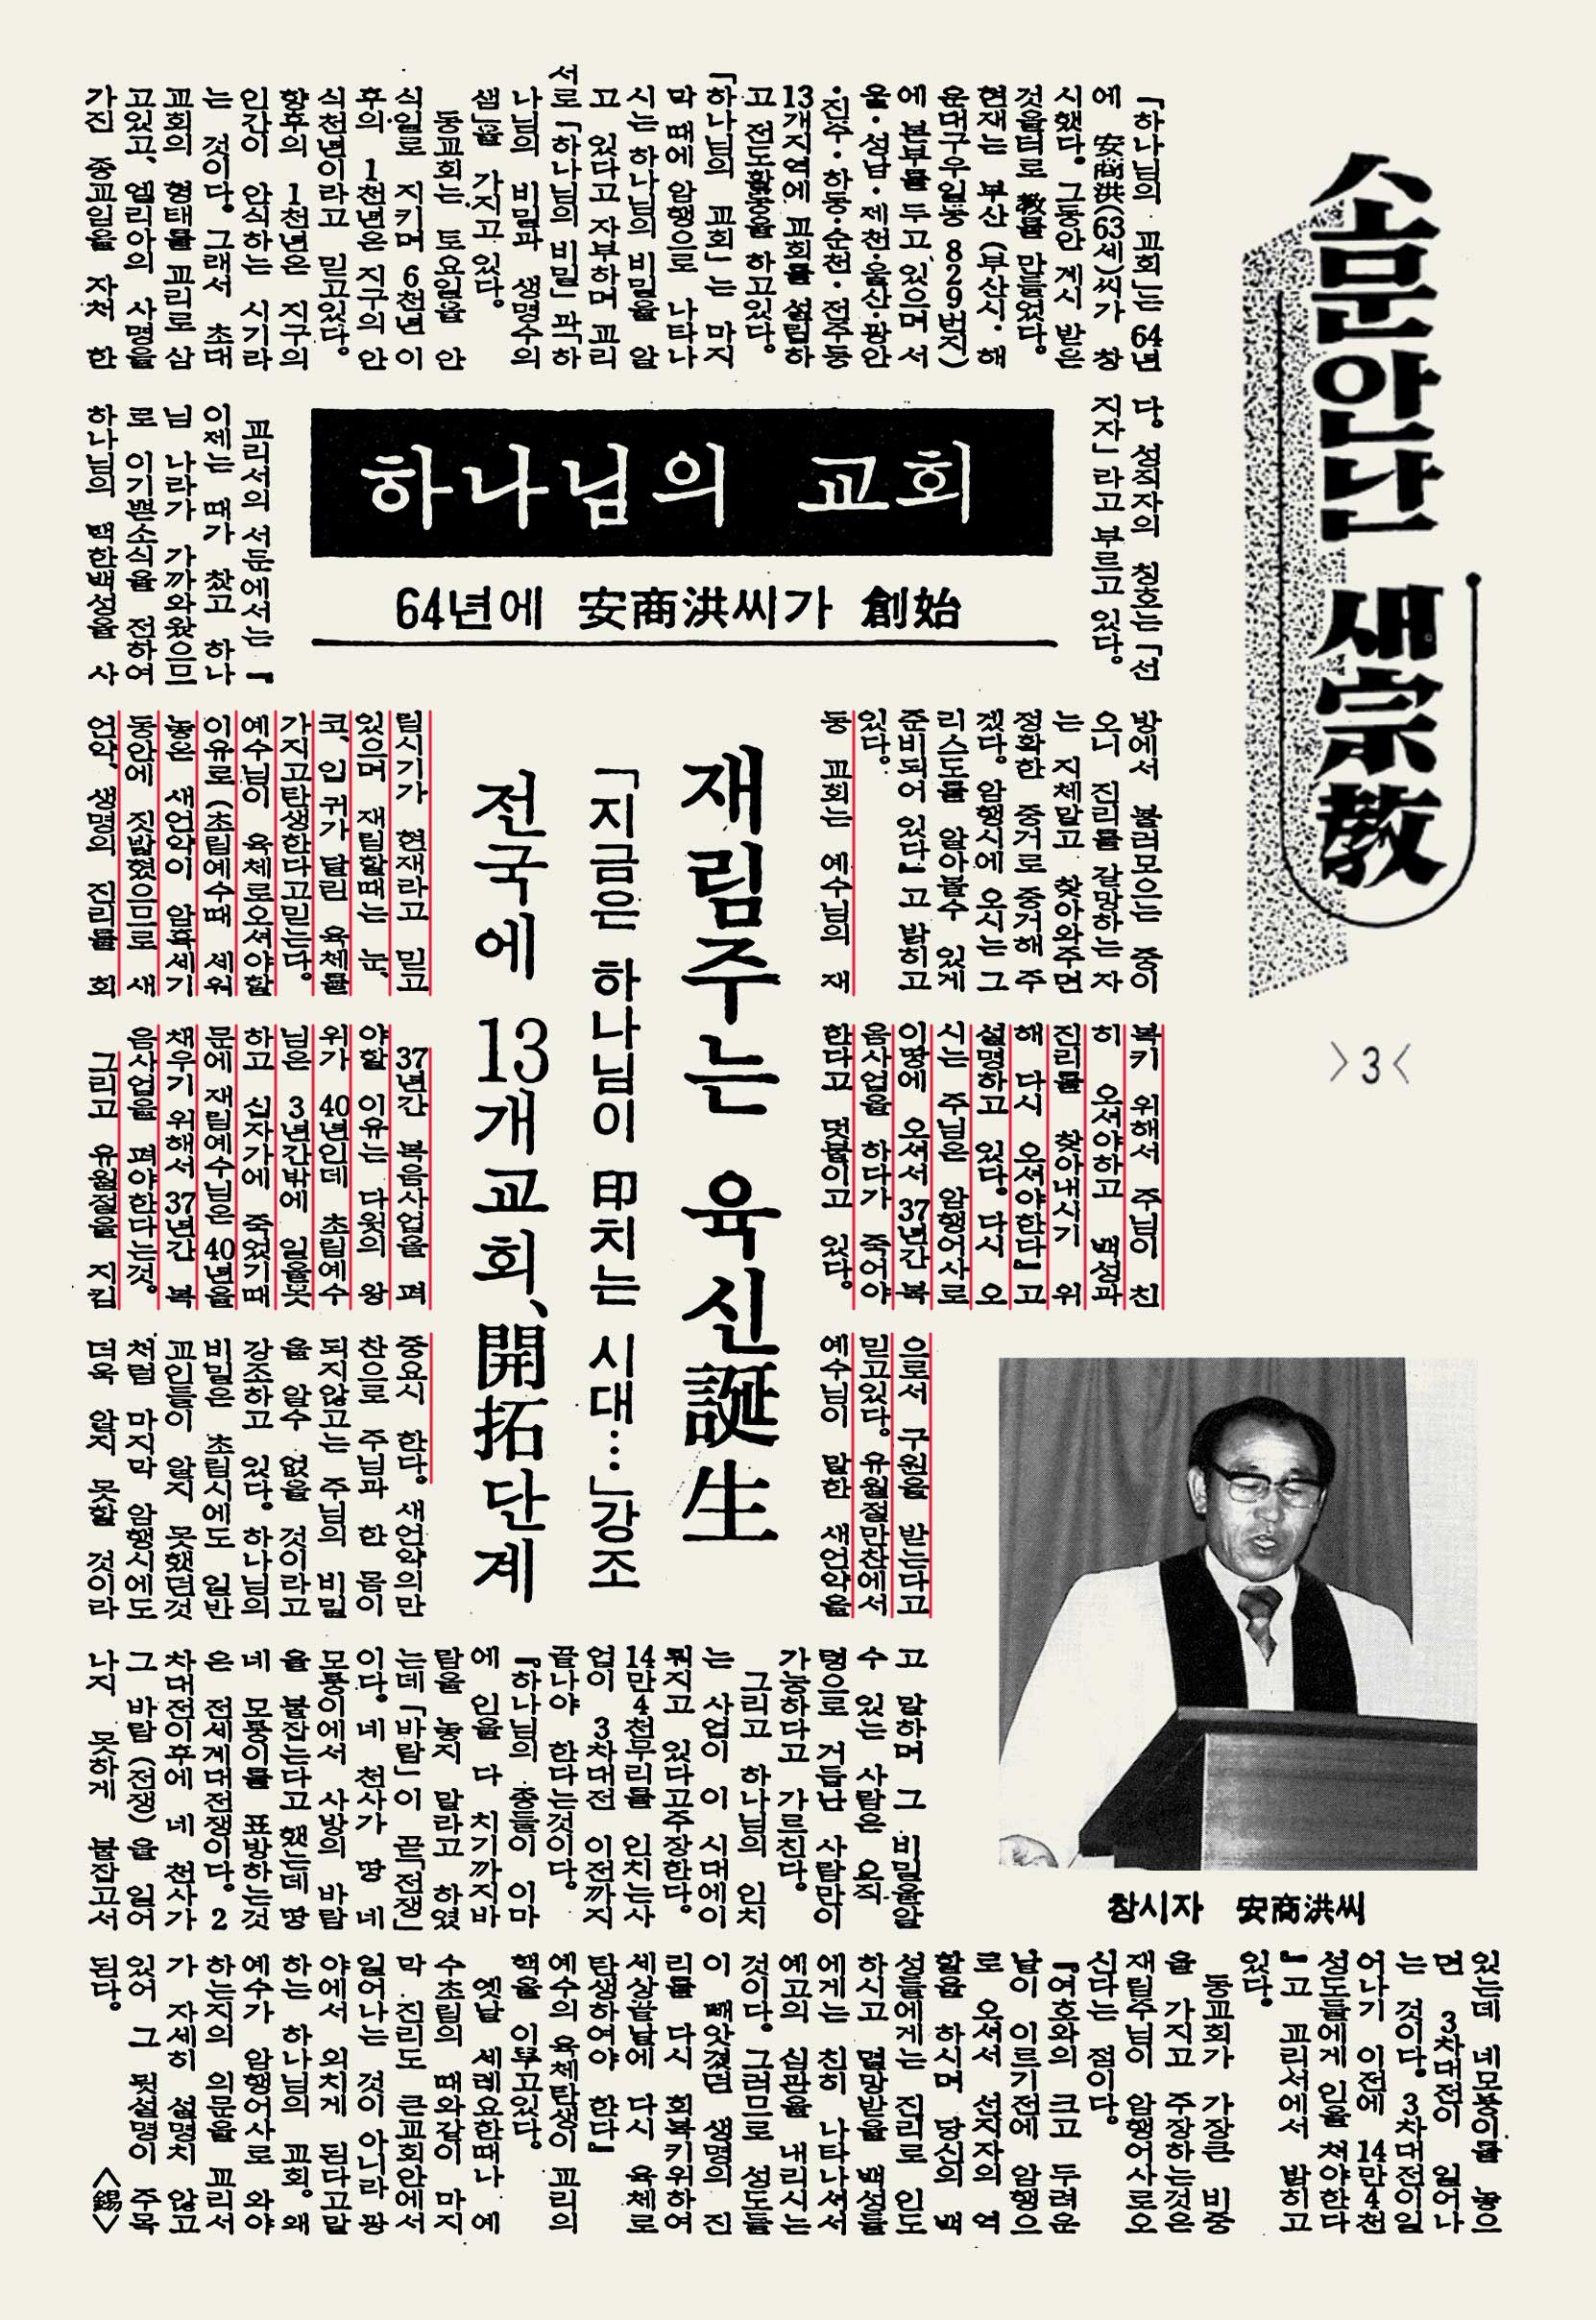 안상홍님 1981년 3월 18일자 주간종교신문 - 다시 오시는 주님은 암행어사로 이 땅에 오셔서 37년간 복음사업을 하다가 죽어야 한다고 덧붙이고 있다